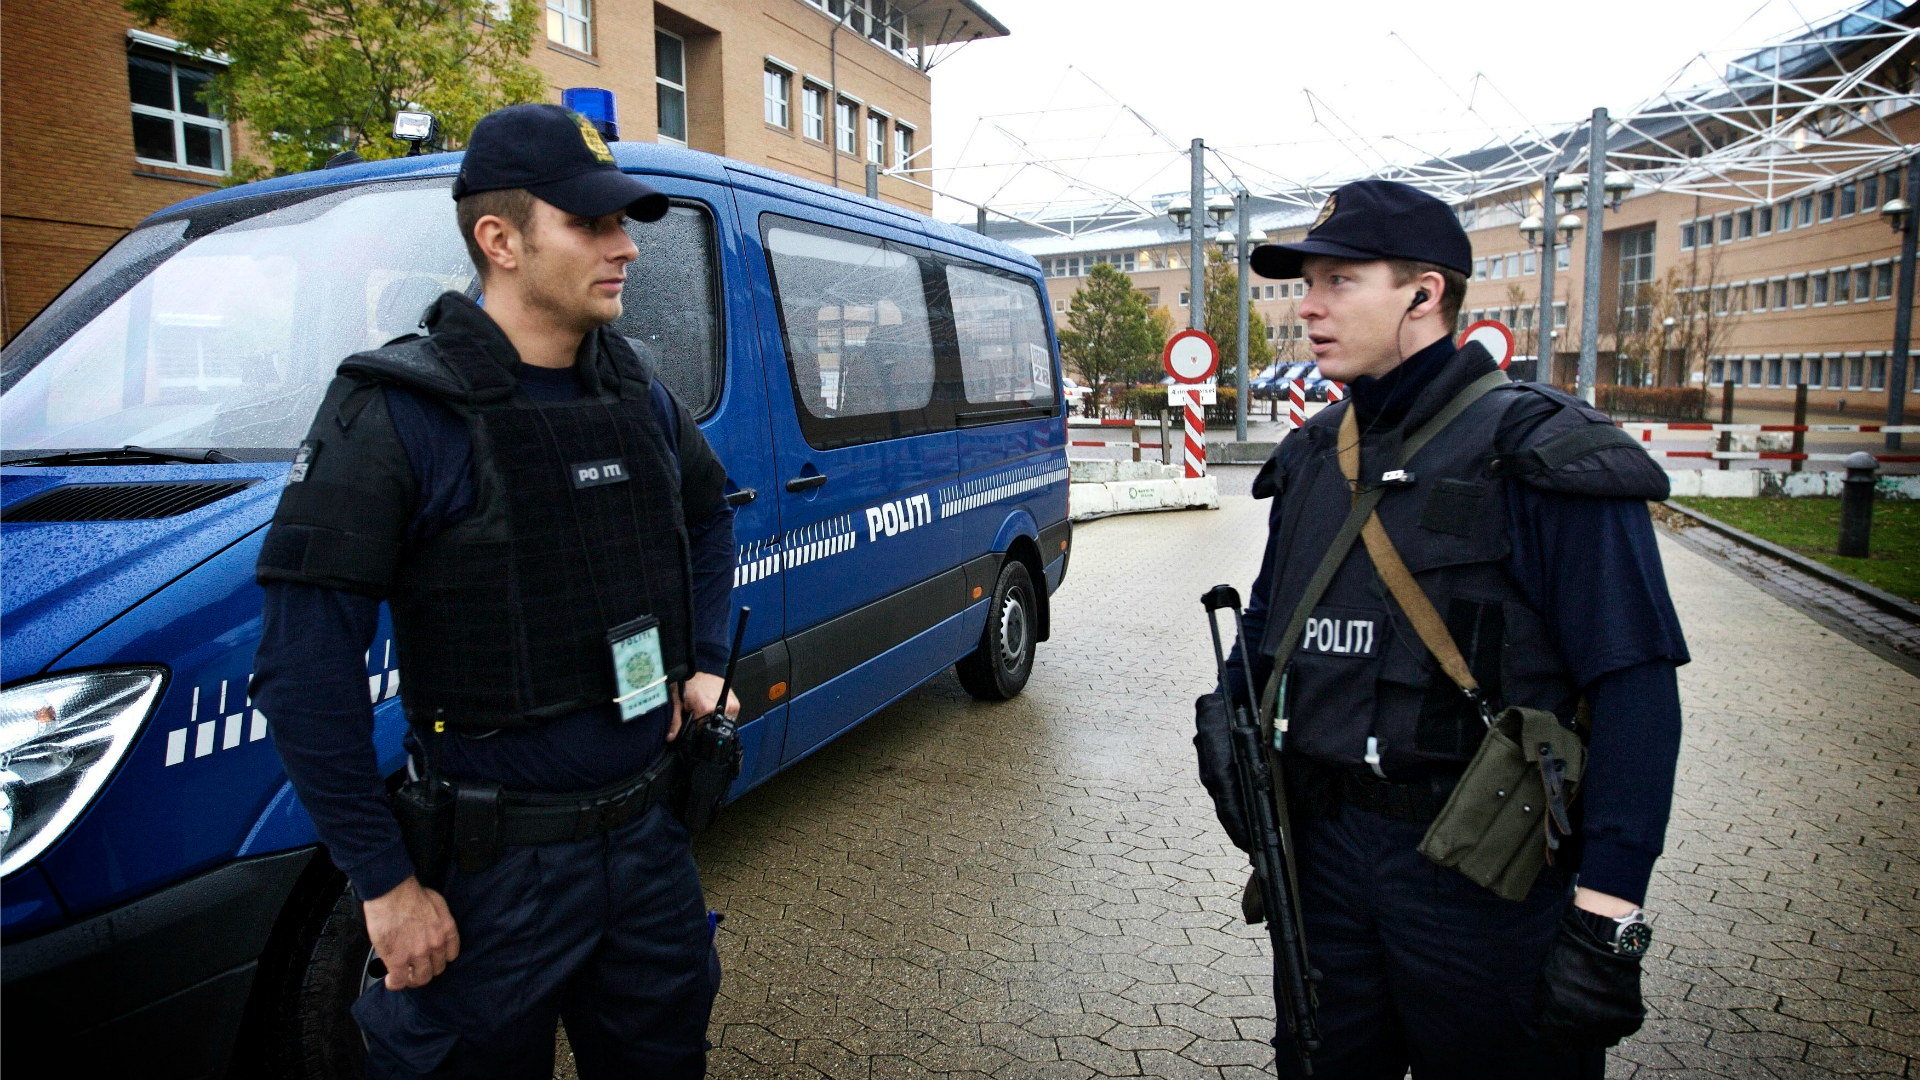 Una danesa convertida al islam, condenada por preparar ataques terroristas